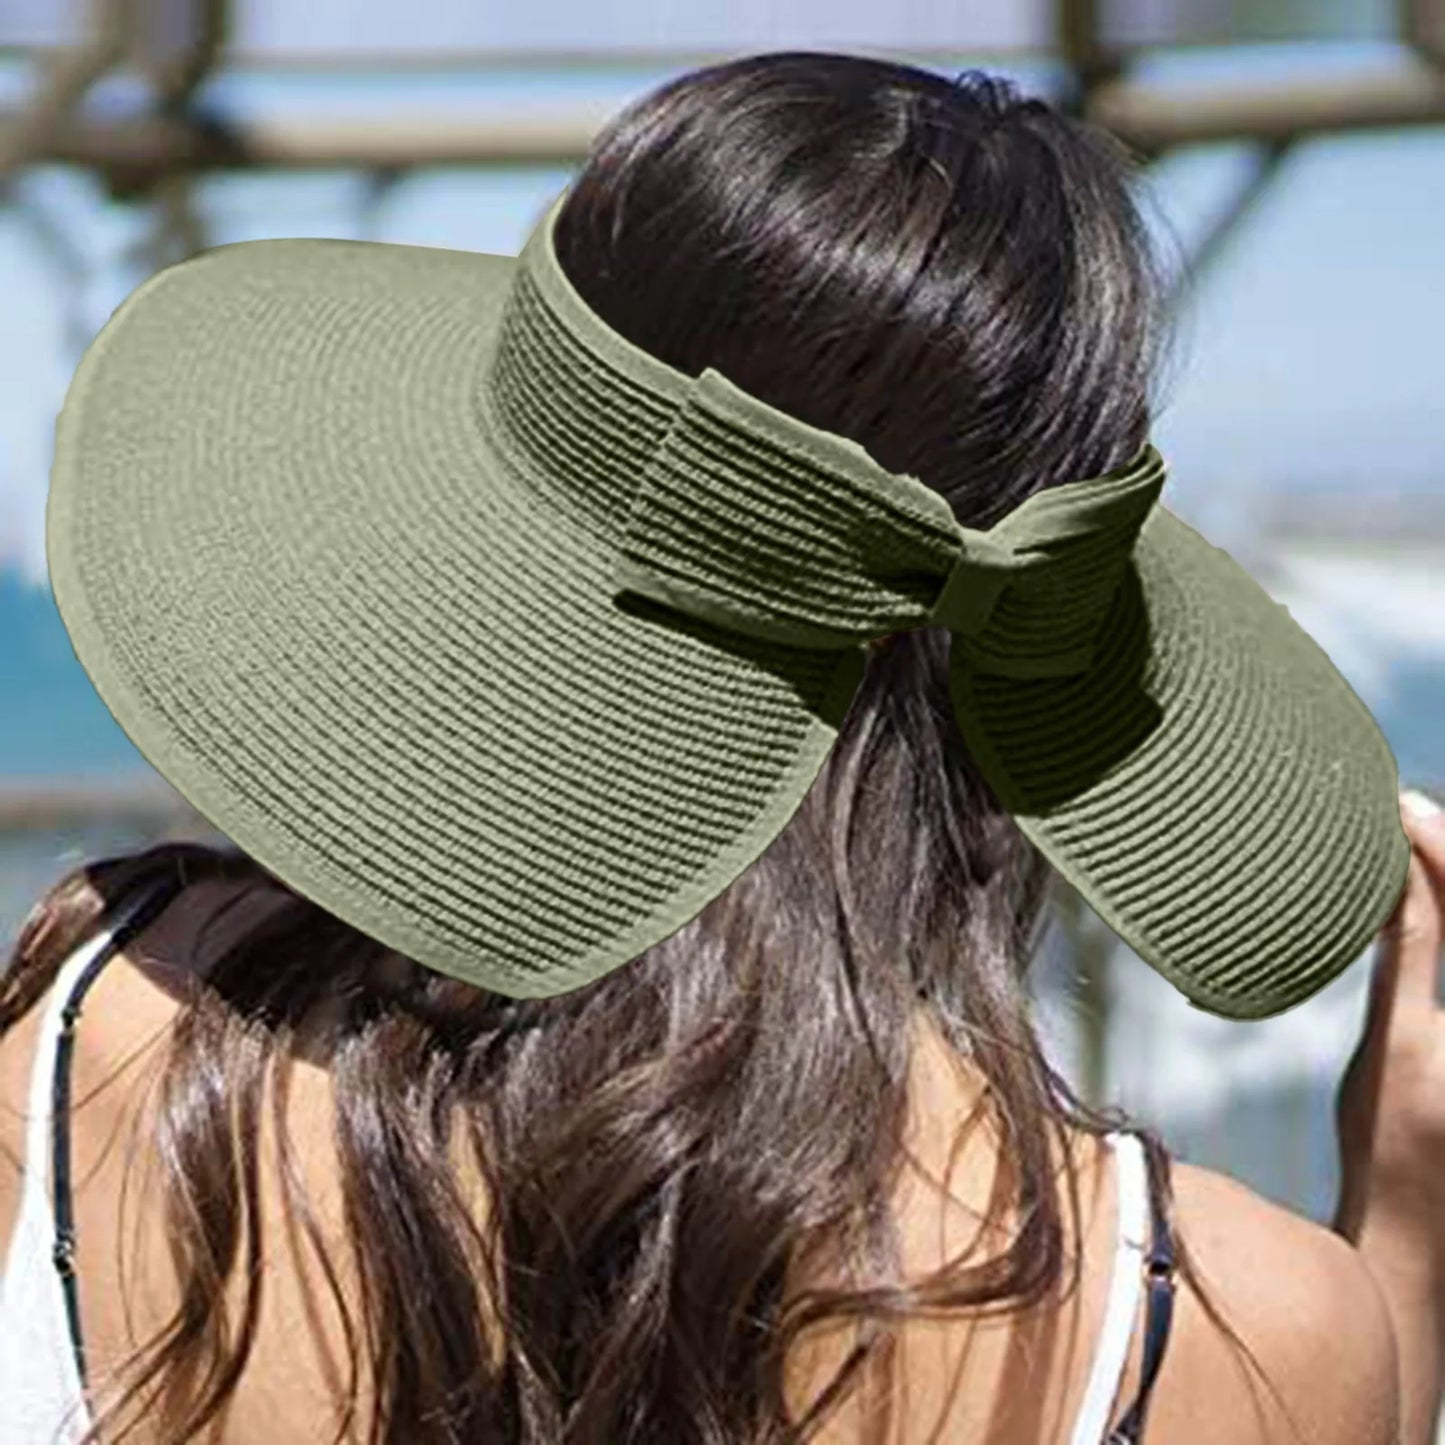 2021 קיץ מתקפל כובע עליון ריק כובע קש שמש כובע חוף כובע uv מגן שמש כובע שמש פנמה כובע קש לנשים